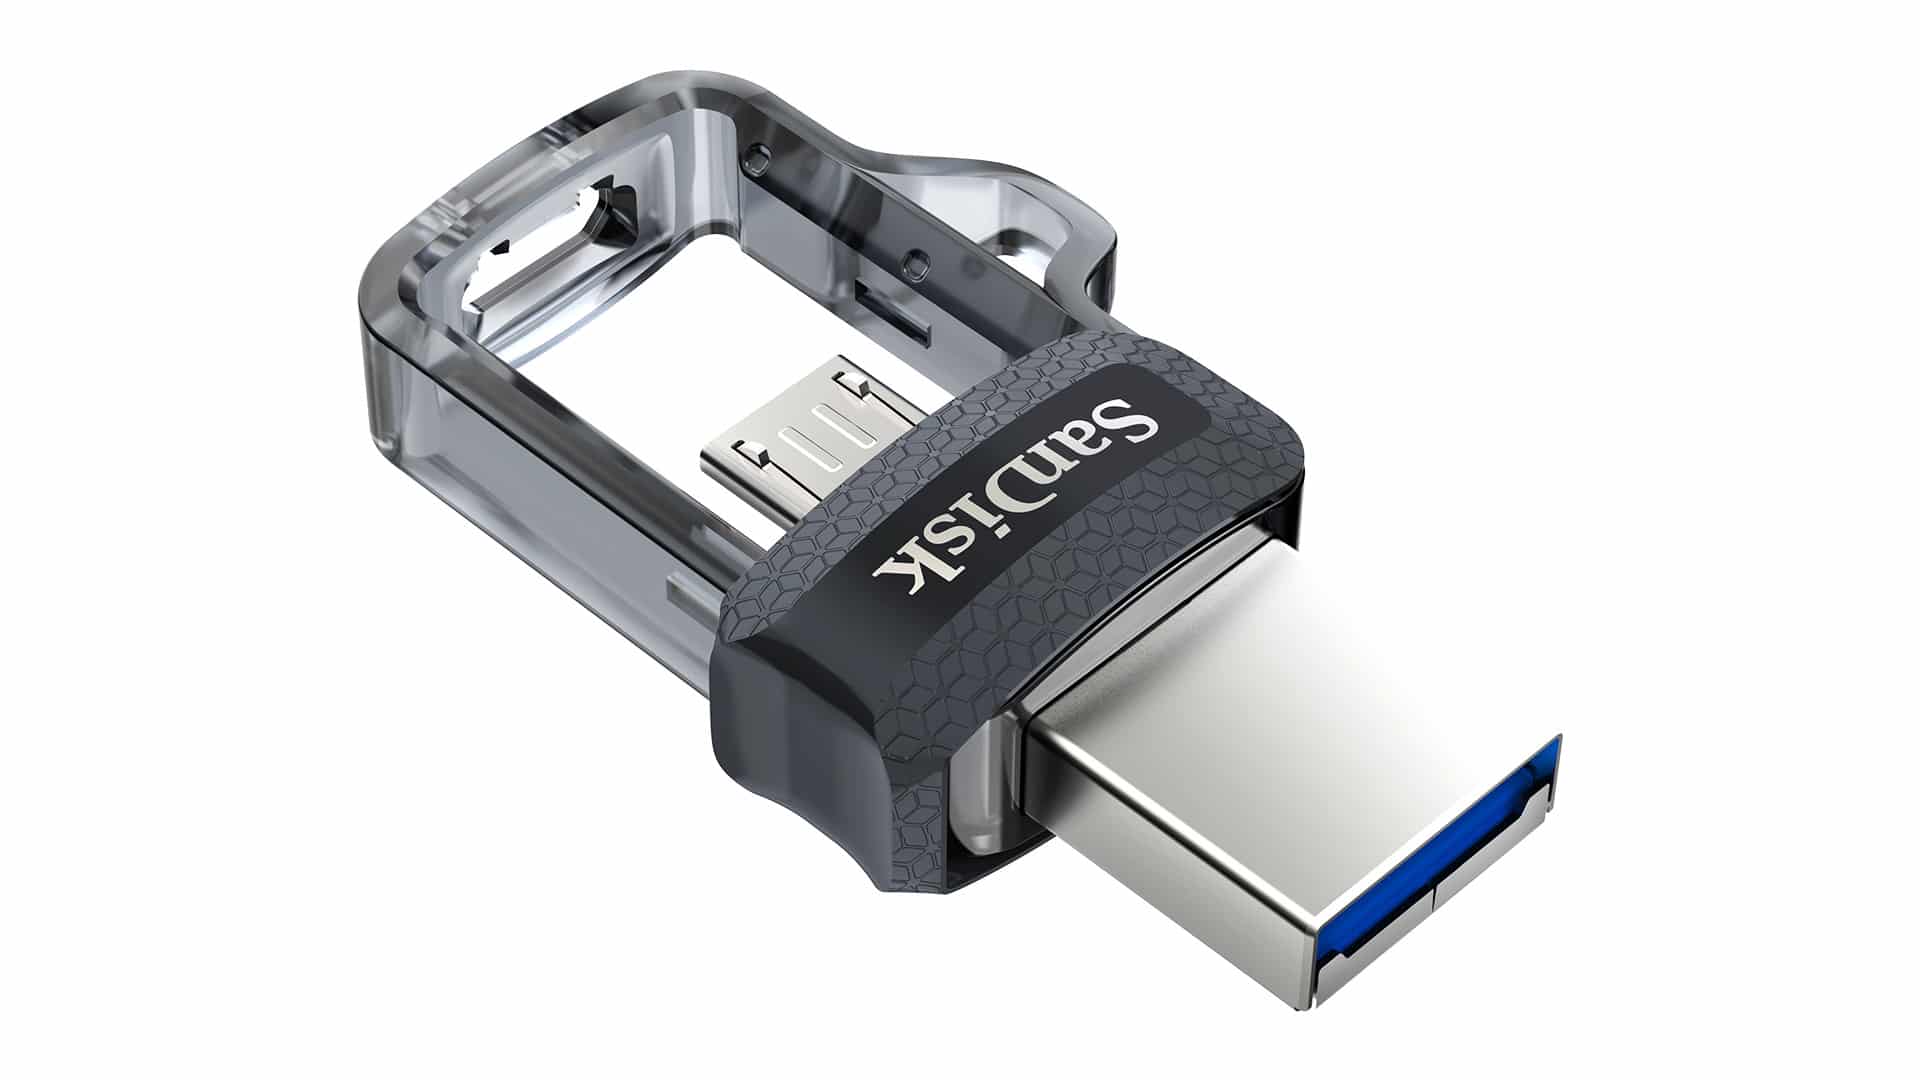 SanDisk-USB-3.0-Ultra-Dual-USB-Drive-OTG